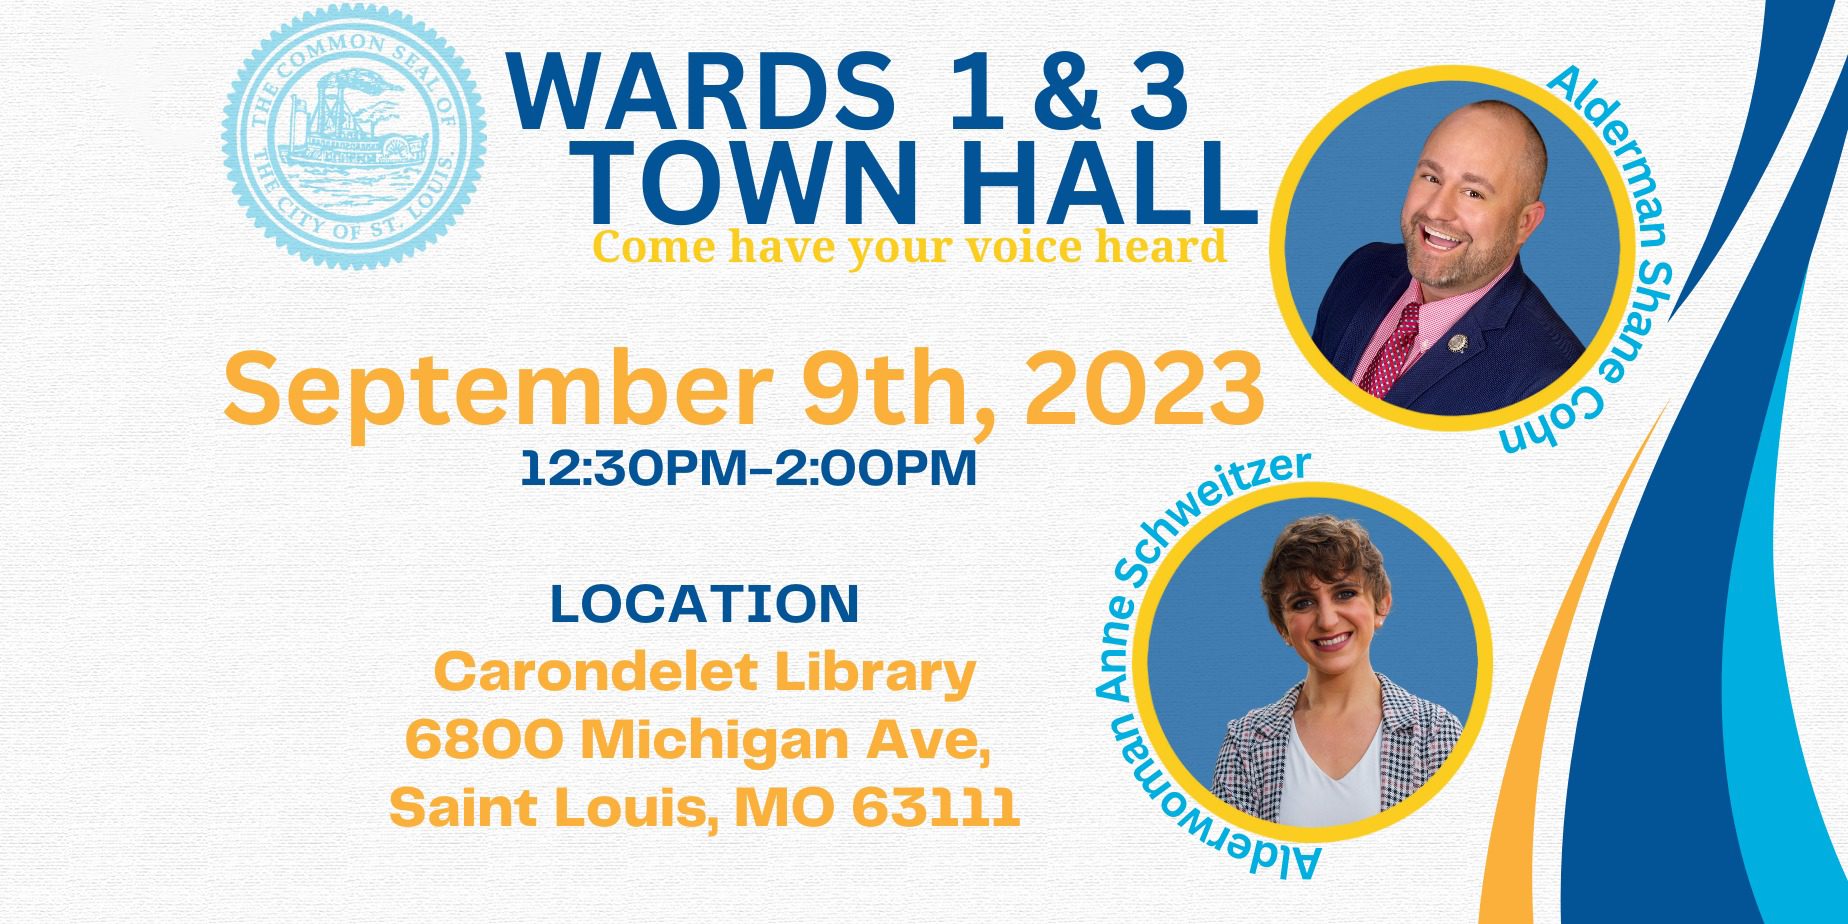 Wards 1 & 3 Town Hall featuring Alderman Shane Cohn and Alderwoman Anne Schweitzer.